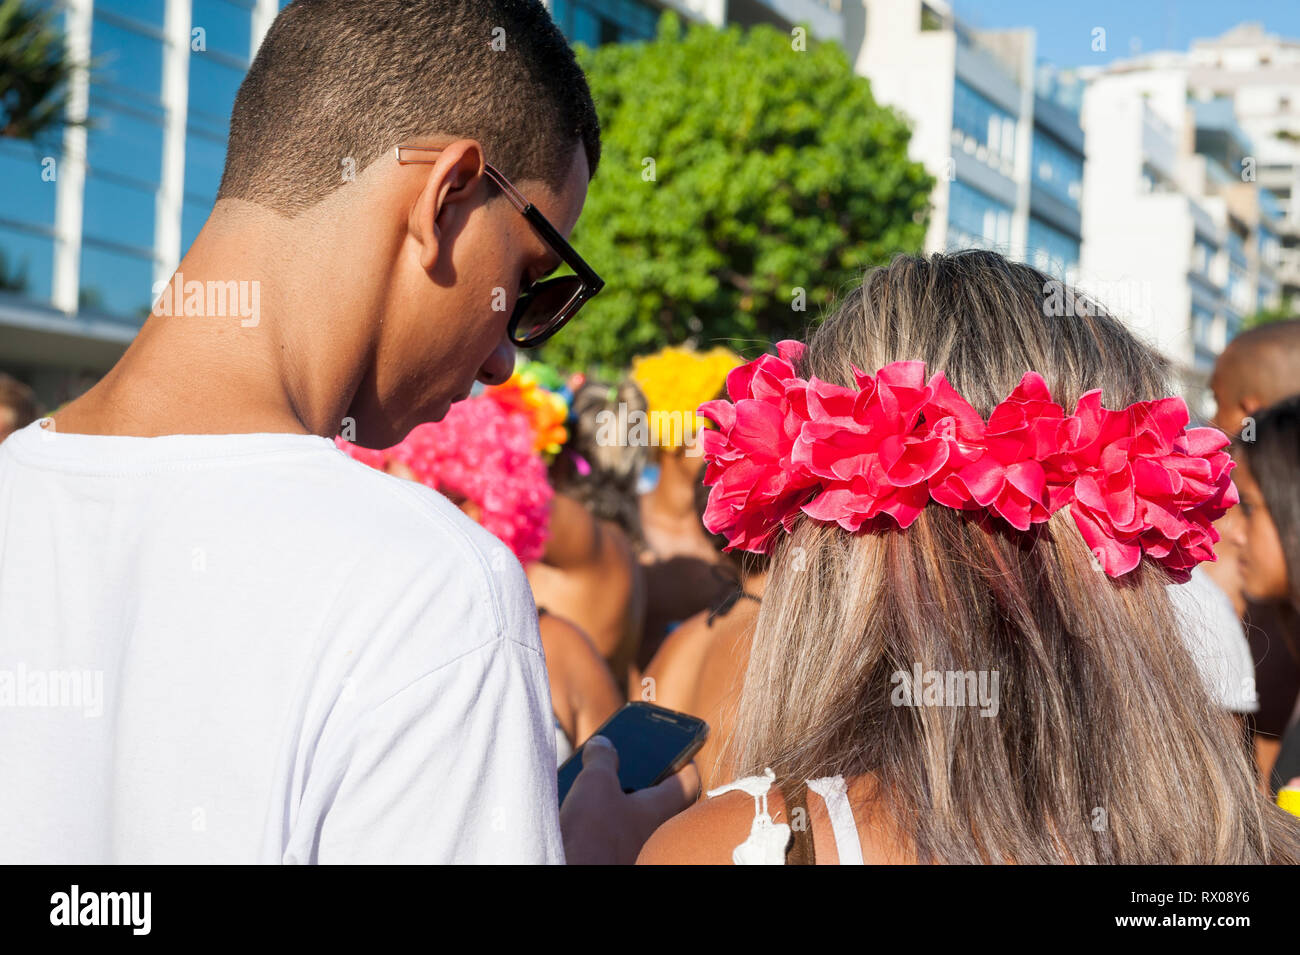 RIO DE JANEIRO - 11. FEBRUAR 2017: ein paar junge Brasilianer ihre Smartphones an einem Nachmittag banda Karneval Straßenfest in Ipanema prüfen. Stockfoto